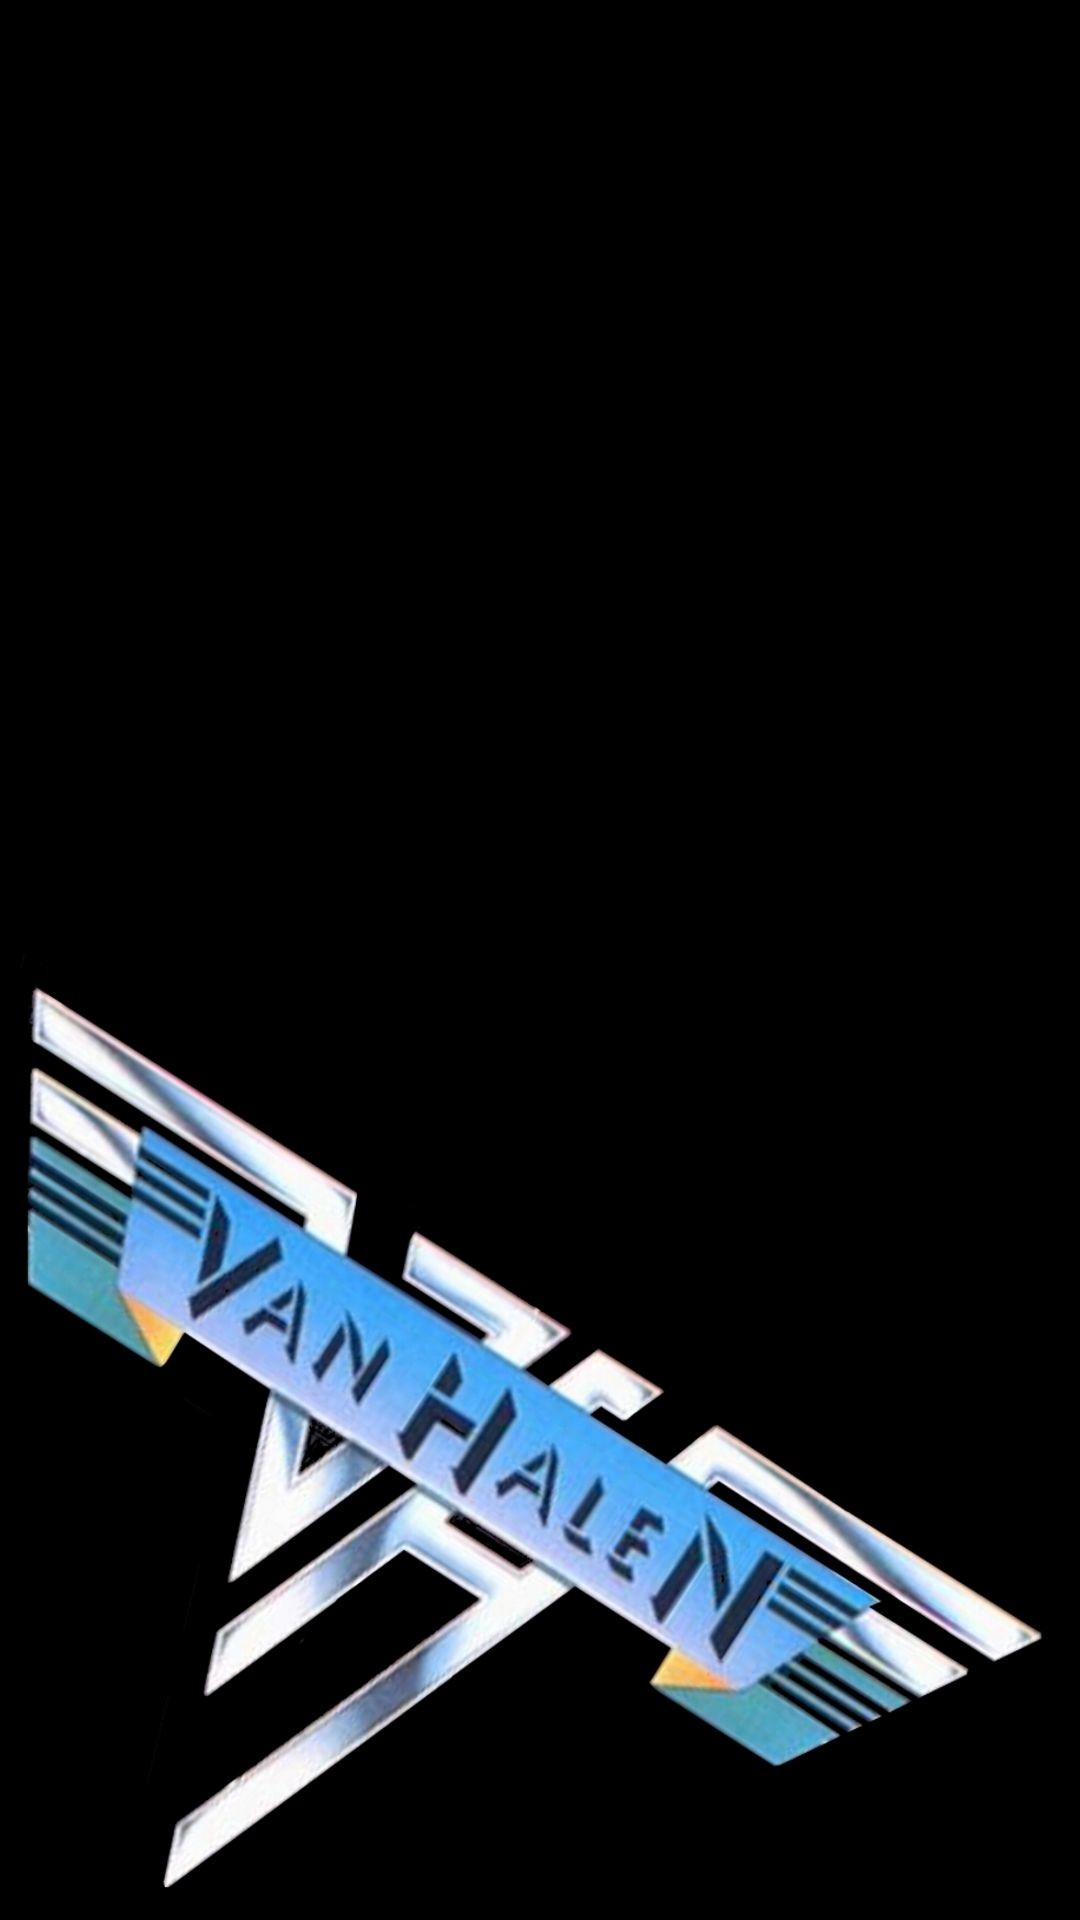 1080x1920 Van Halen Eddie Van Halen, Rock Legends, Black Backgrounds, Music Bands,  Rock